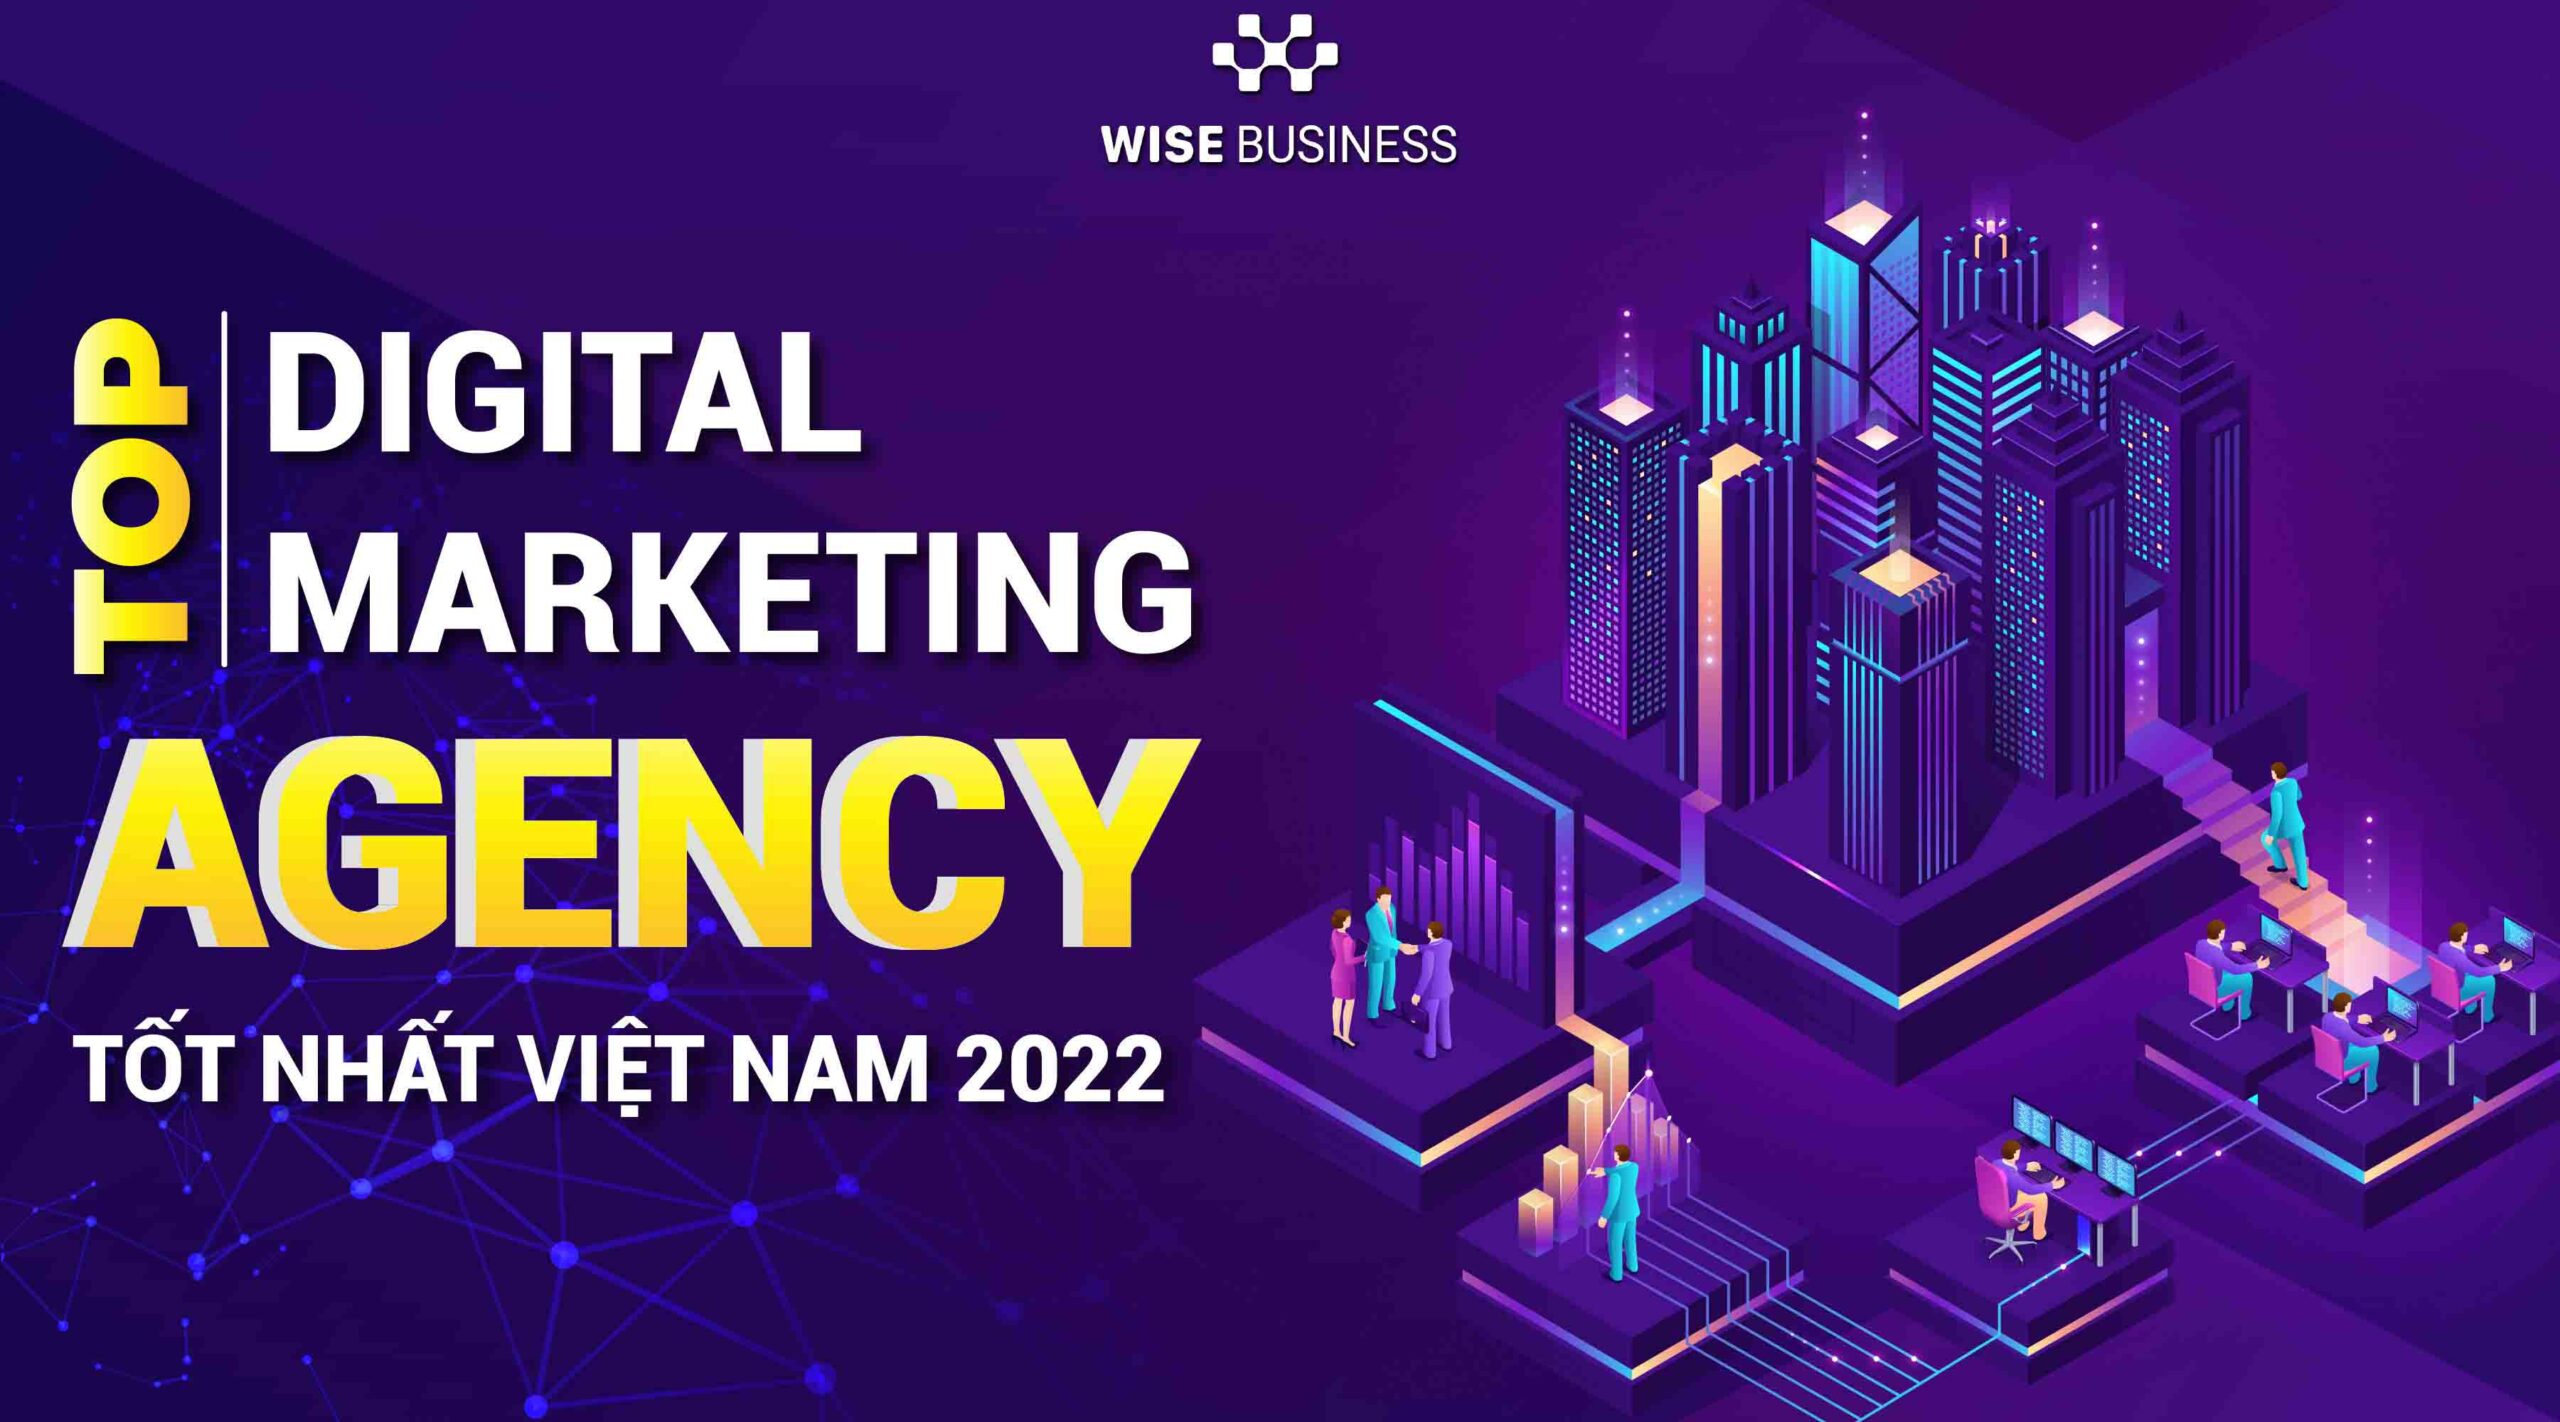 top-digital-marketing-agency-tot-nhat-viet-nam-2022